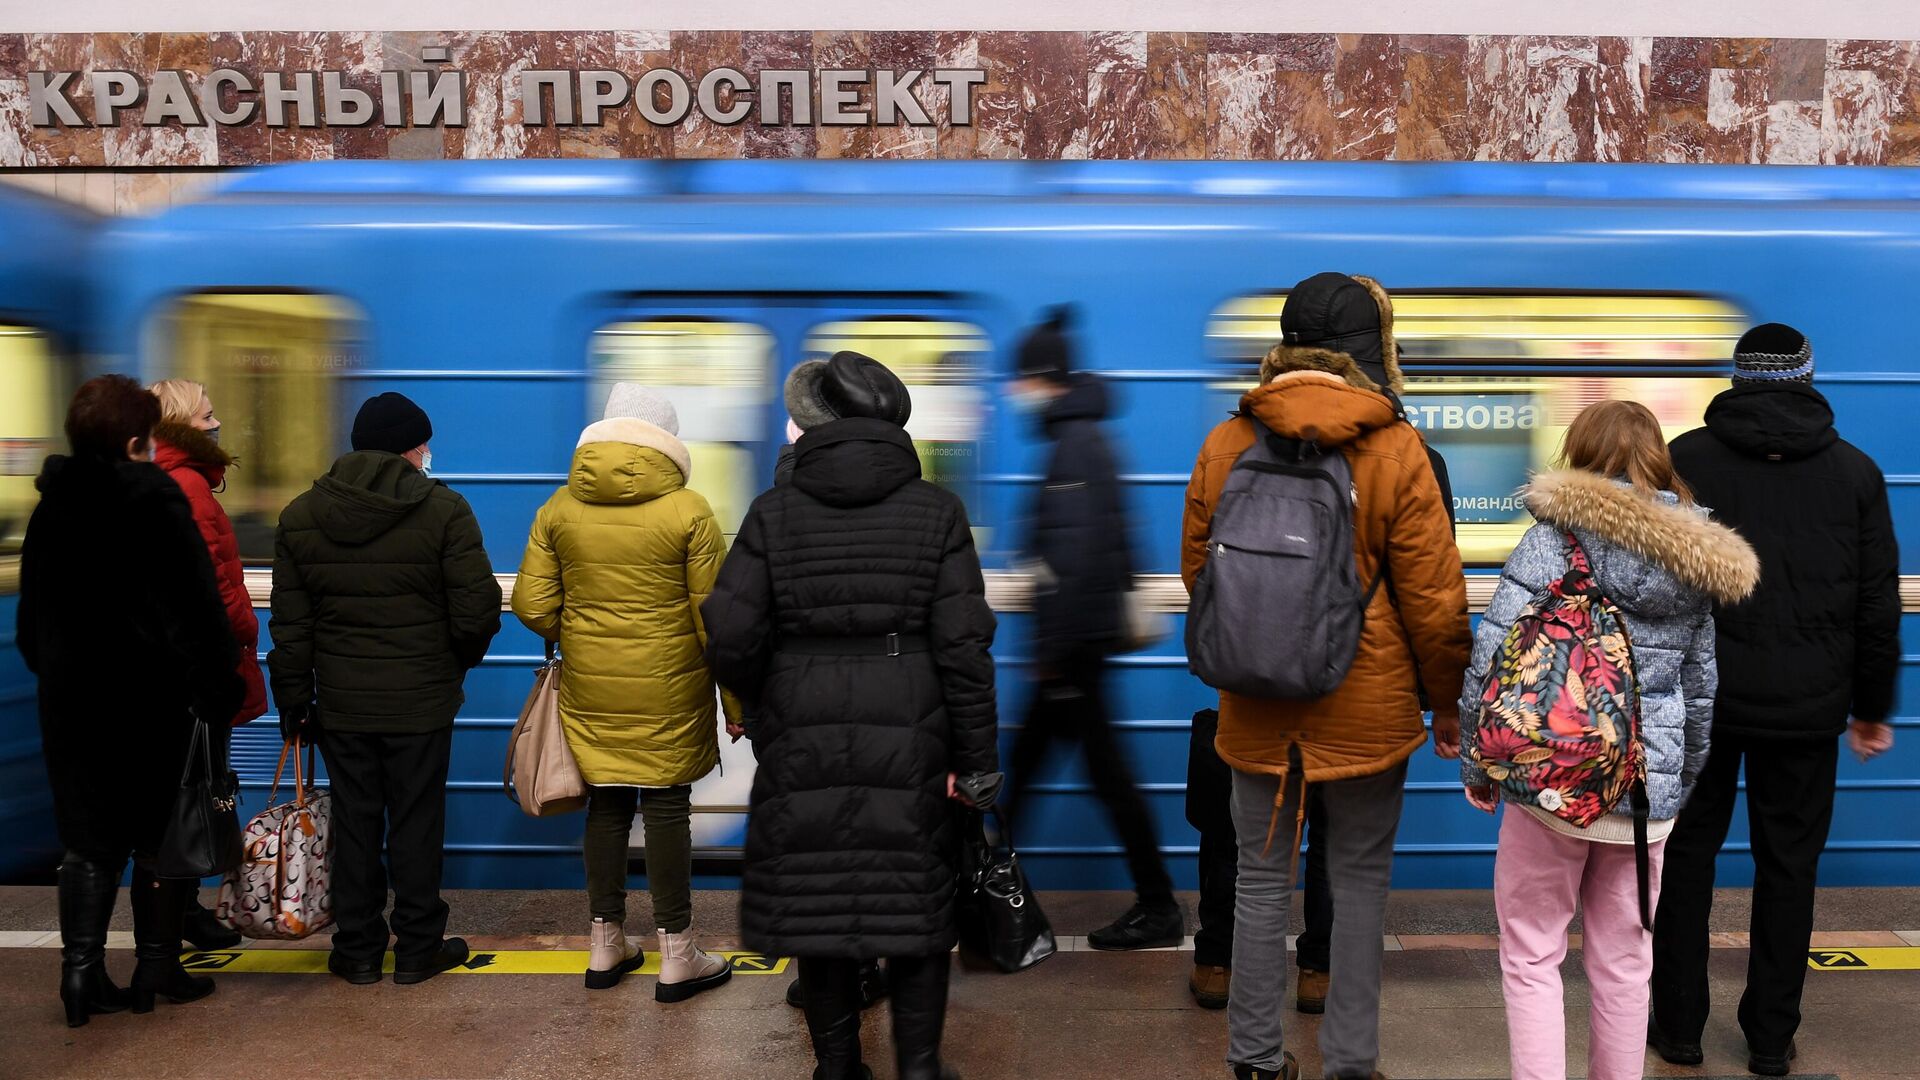 Пассажиры на станции метро Красный проспект в Новосибирске - РИА Новости, 1920, 25.11.2021